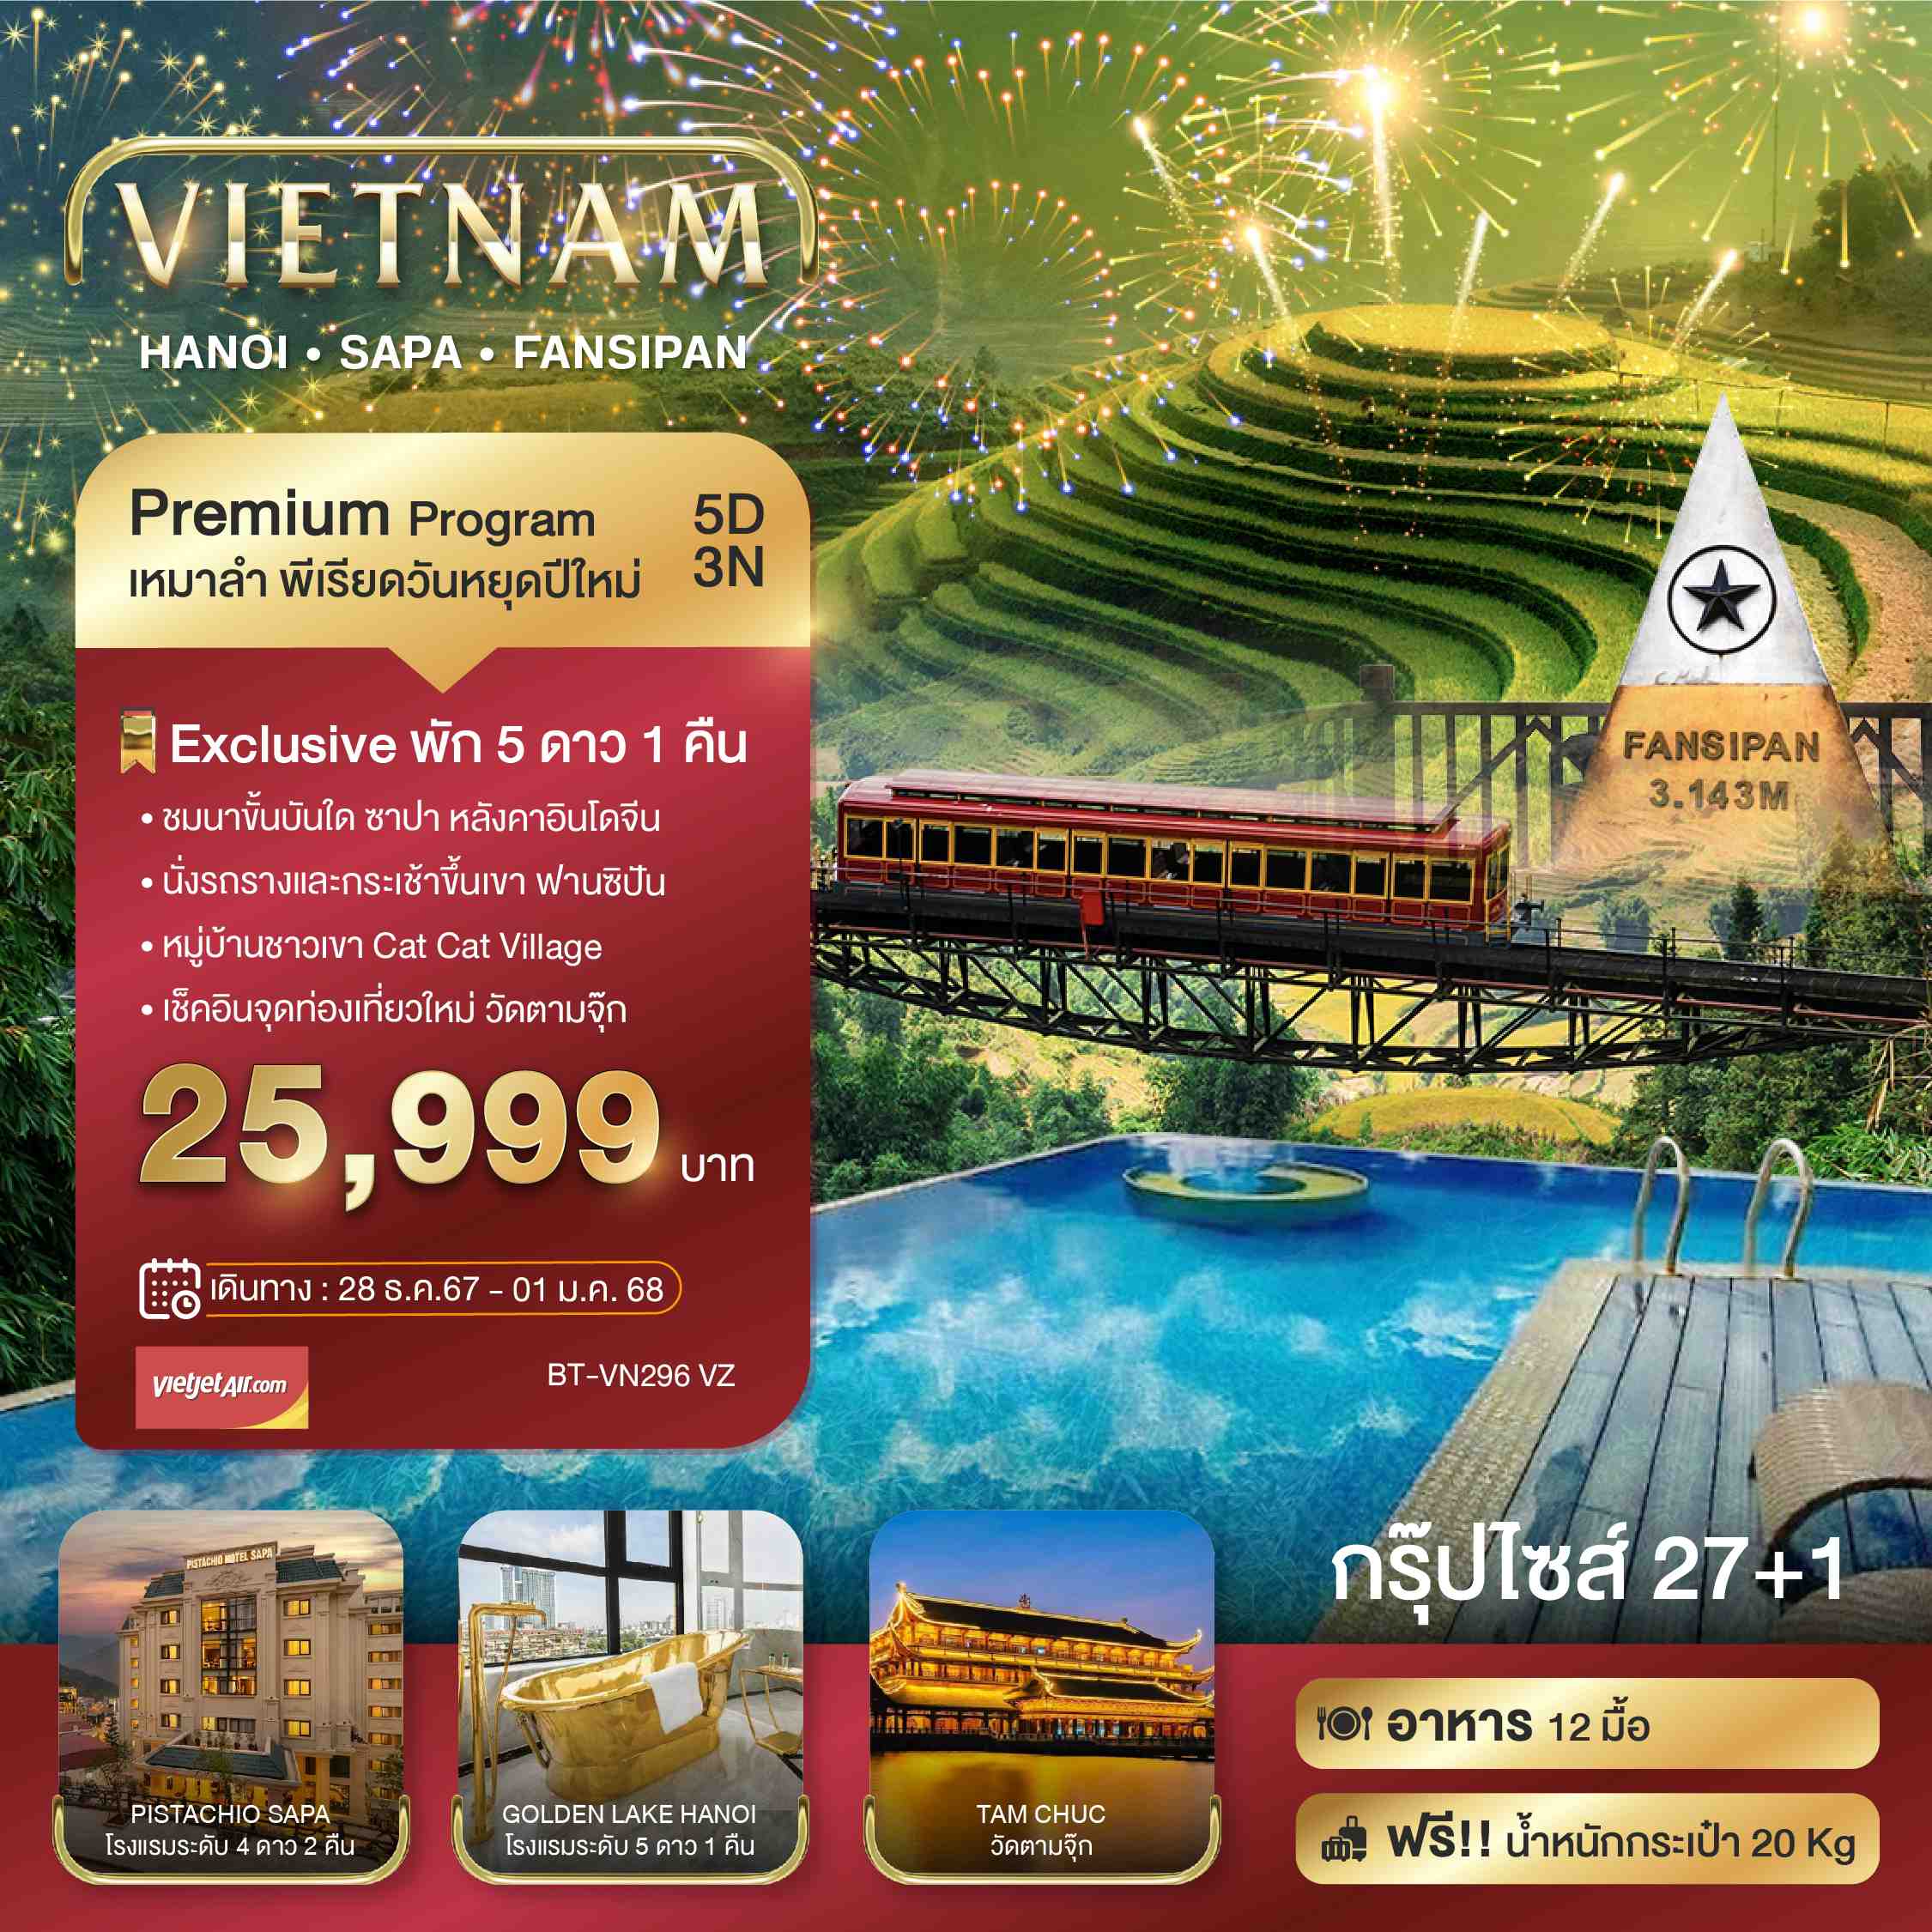 ทัวร์เวียดนาม บินเหมาลำ ฉลองเทศกาลปีใหม่ ซาปา ฮานอย ฟานซีปัน วัดตามจุ๊ก 5วัน 3คืน (VZ)